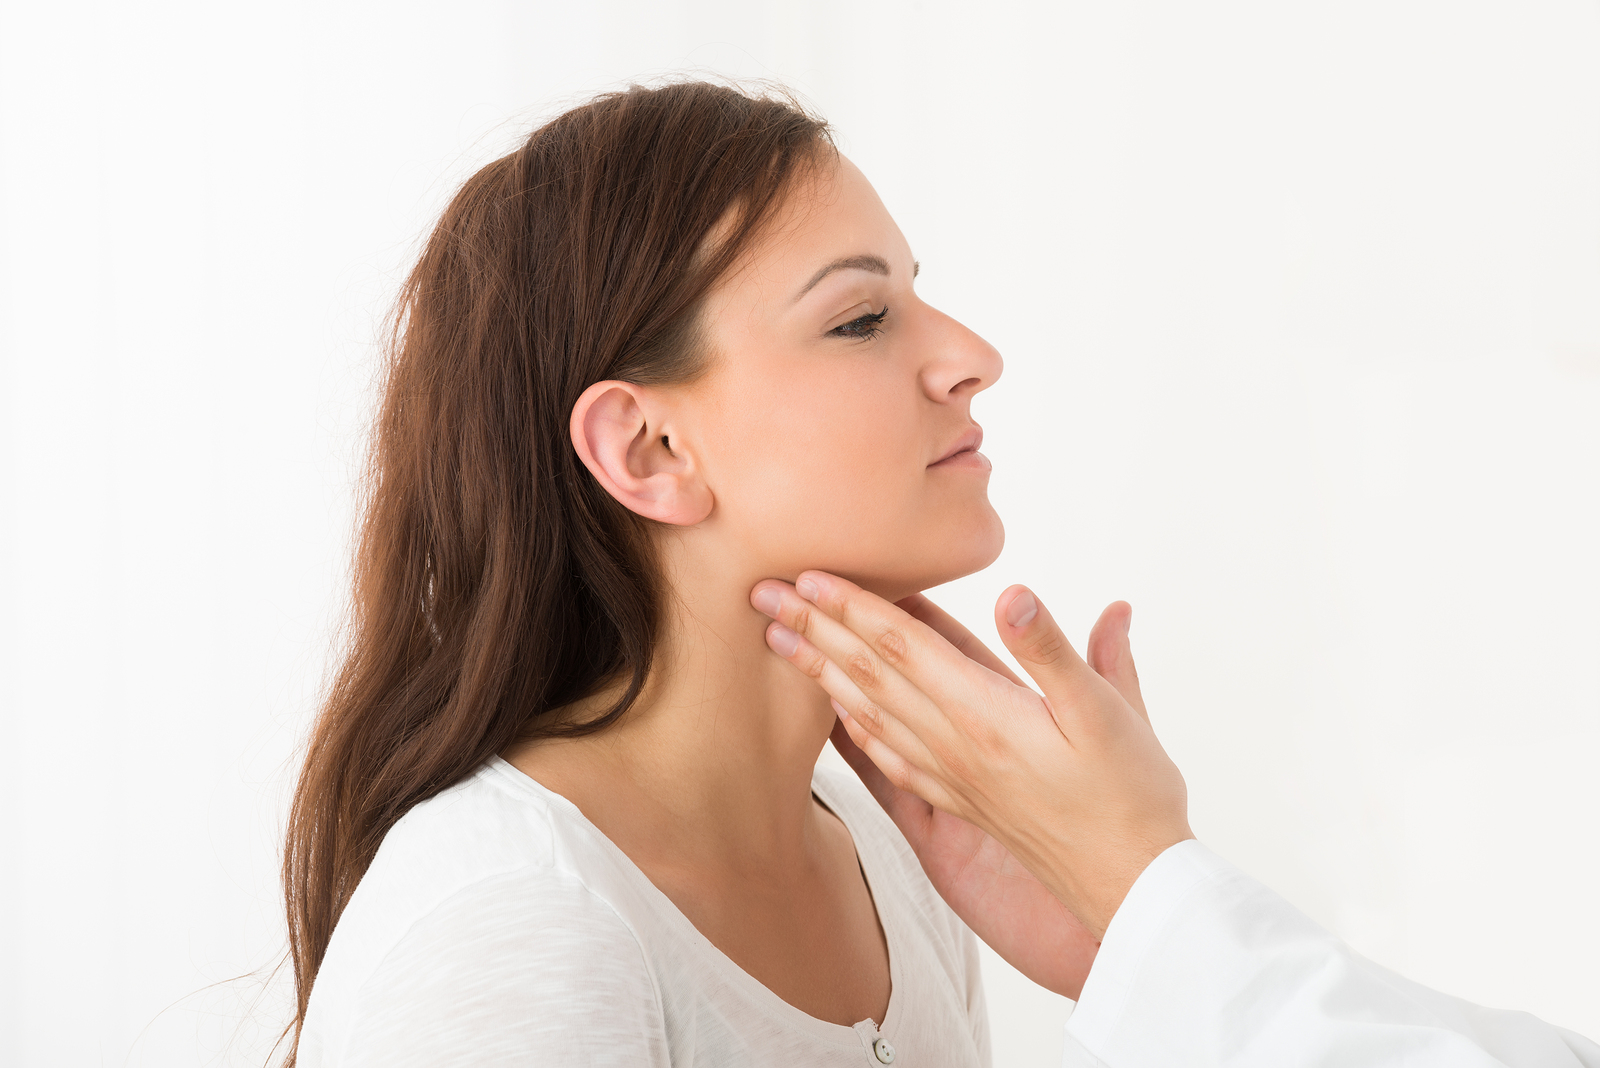 thyroid symptoms in women